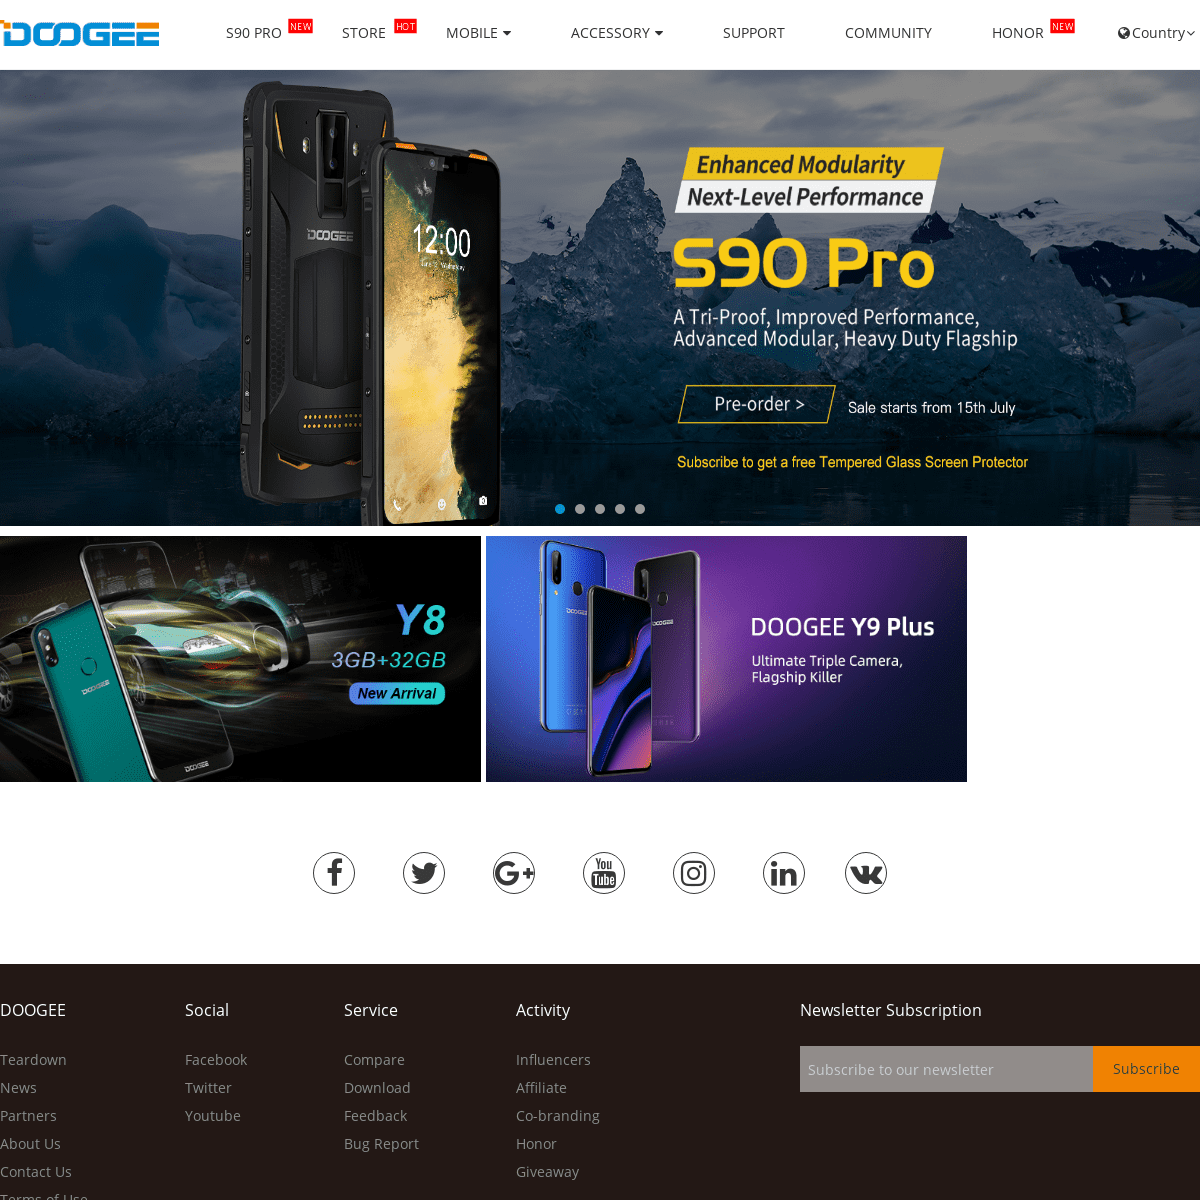  DOOGEE Mobile for Smartphones & Accessories - DOOGEE 